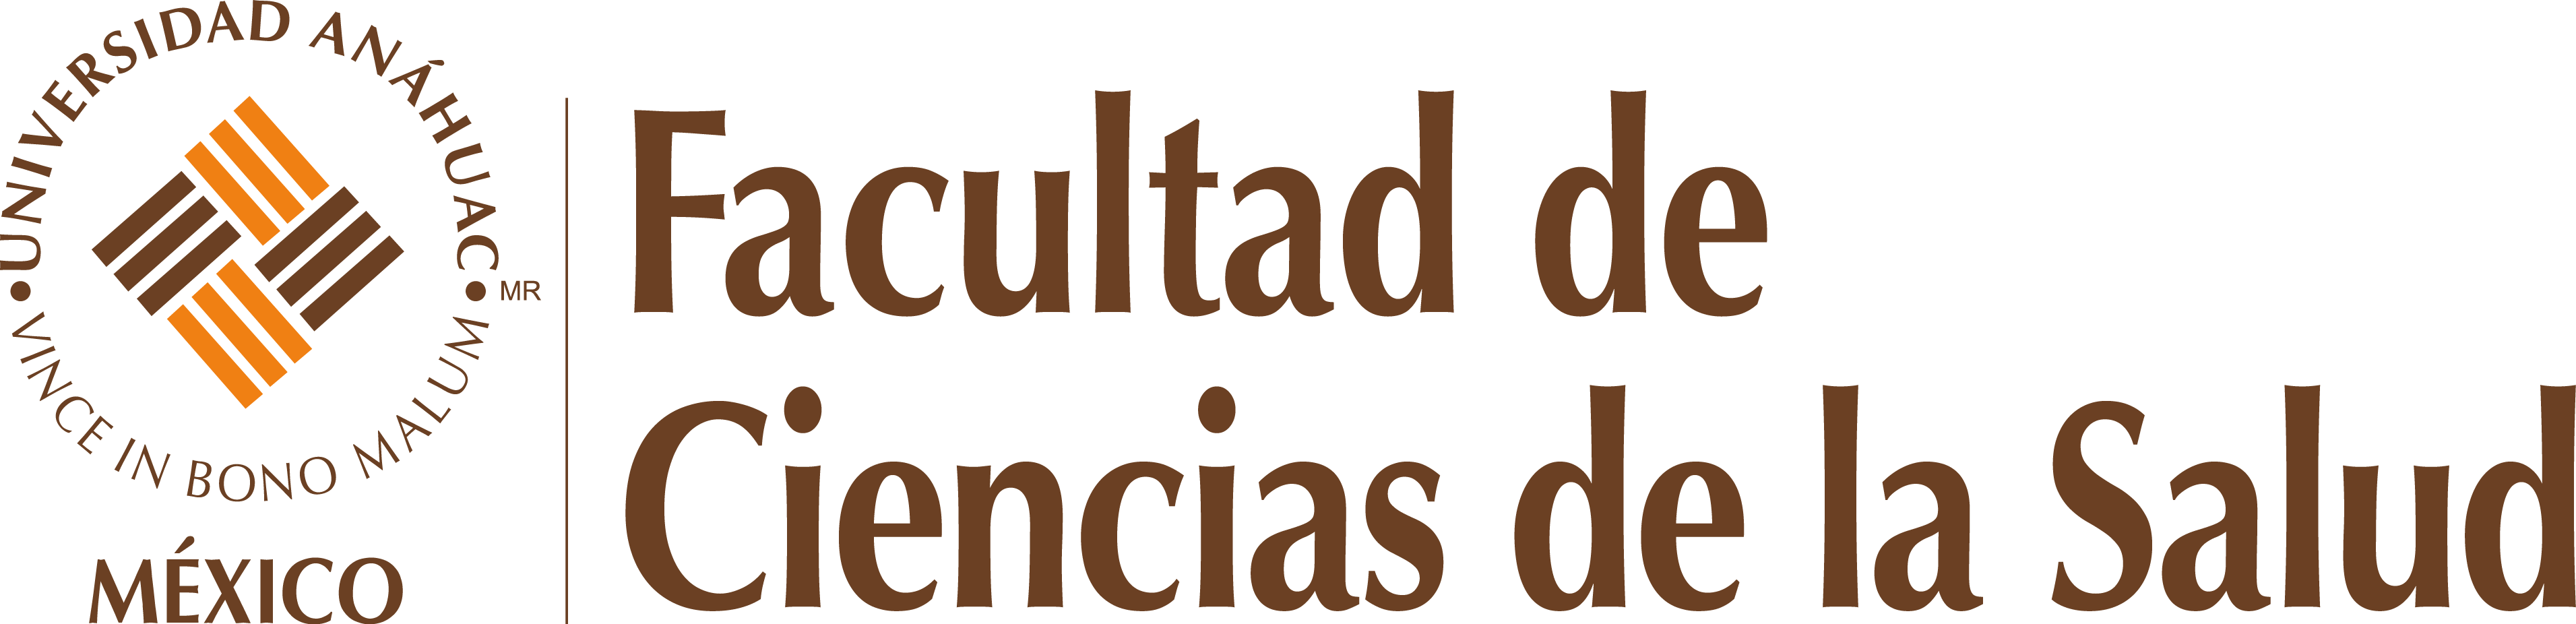 Logo Facultad de Ciencias de la Salud Responsivo